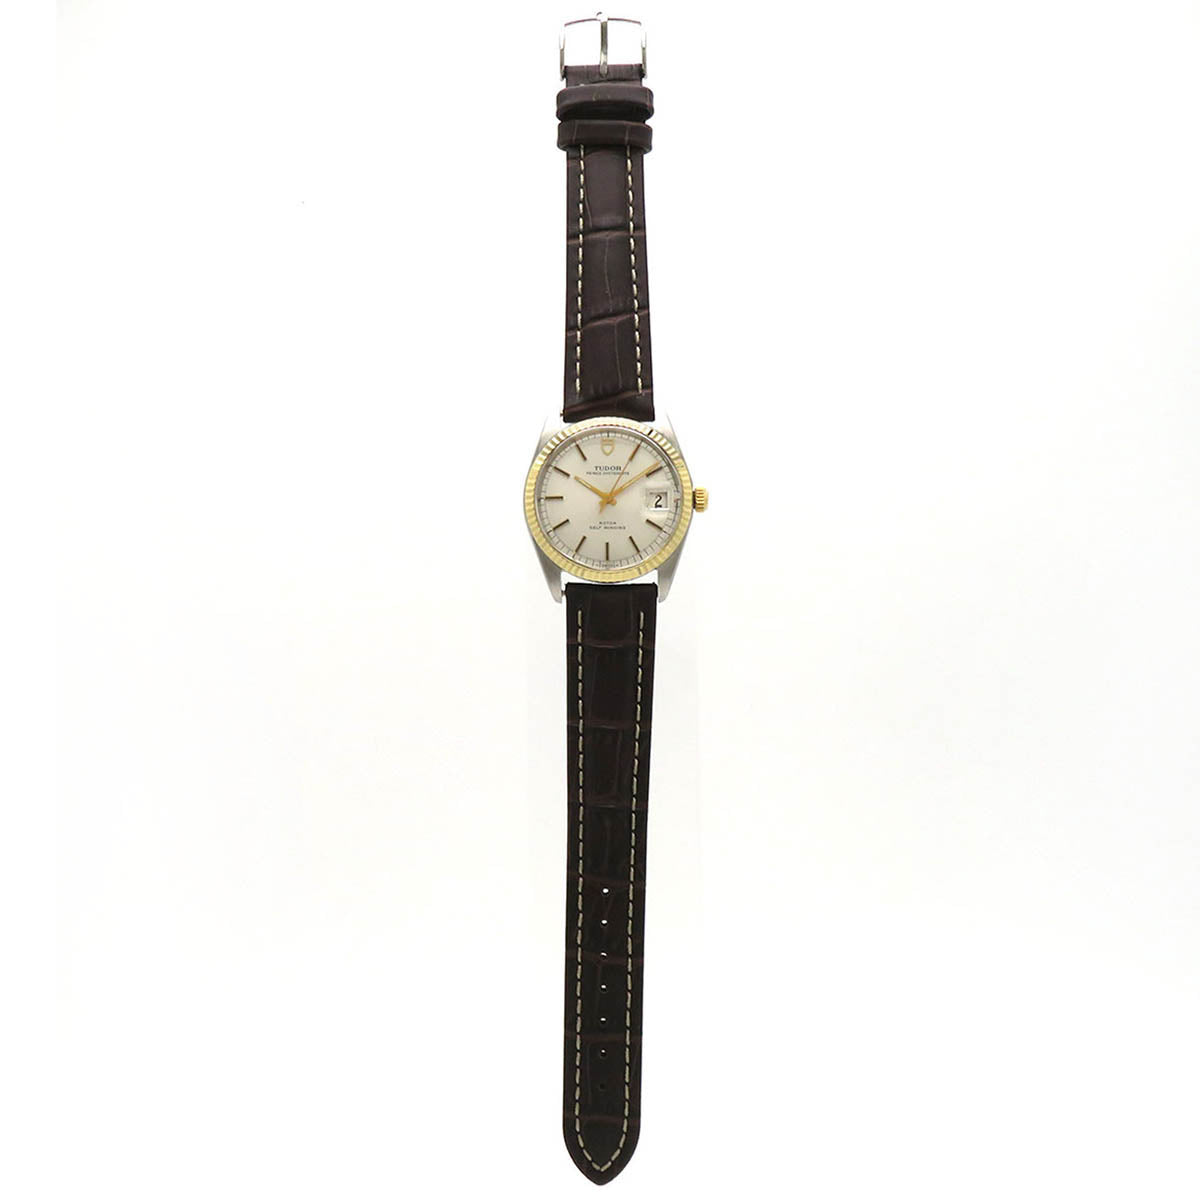 Automatic Prince Oysterdate Wrist Watch 2224388